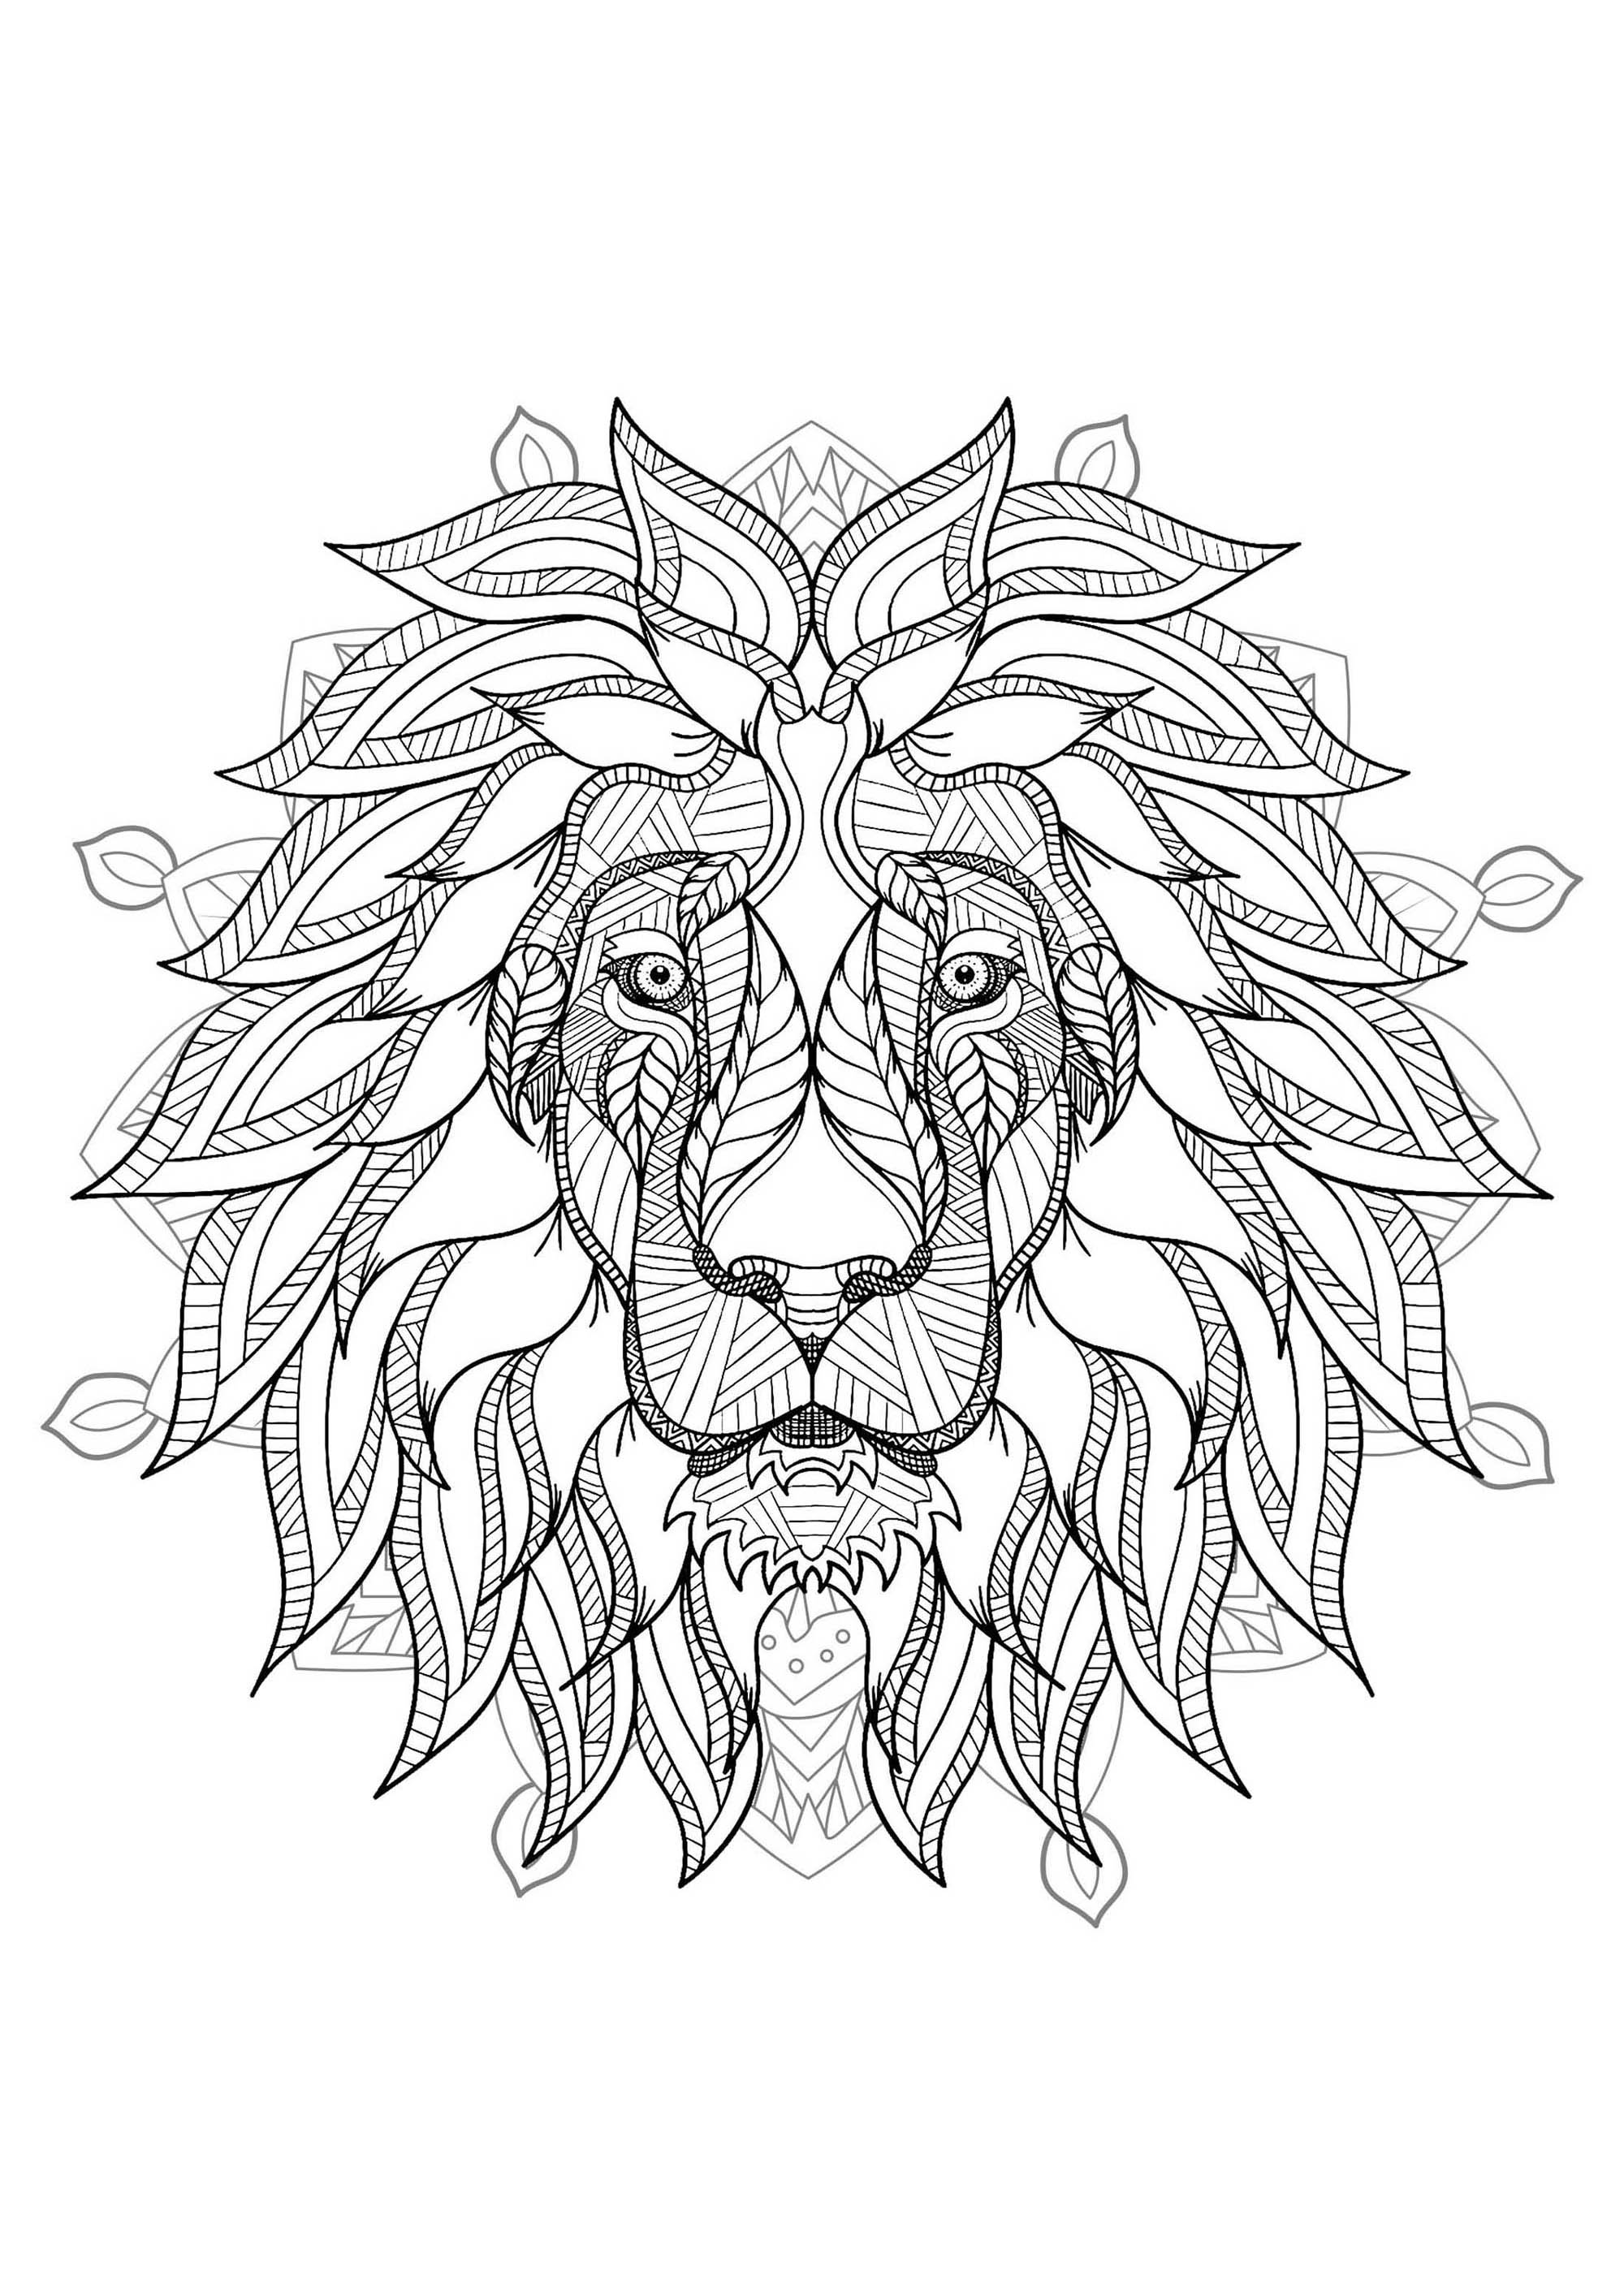 Mandala con testa di leone - 2. Tocca a voi colorare il Re degli animali, in questa bellissima pagina da colorare simmetrica e dettagliata.